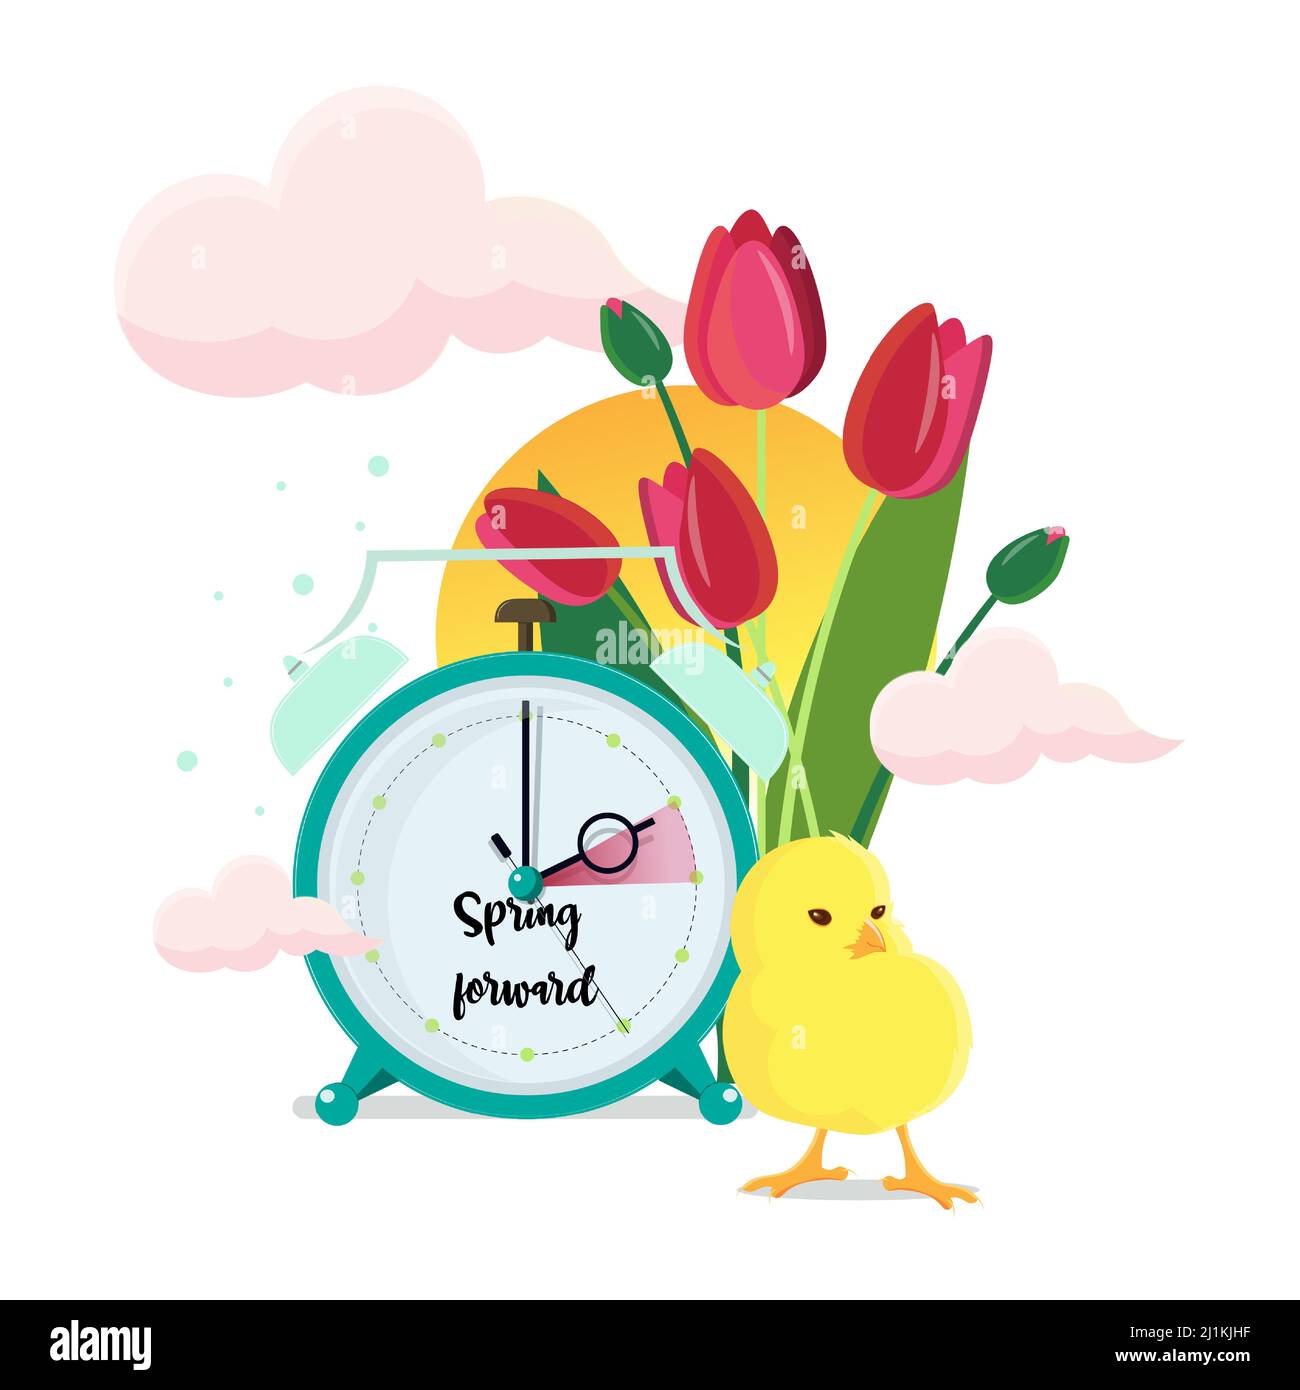 Heure d'été. Les horloges se déplacent vers l'avant. Tulipes et poulet près de l'horloge. Concept de changement d'horloge de printemps. Illustration vectorielle. Illustration de Vecteur